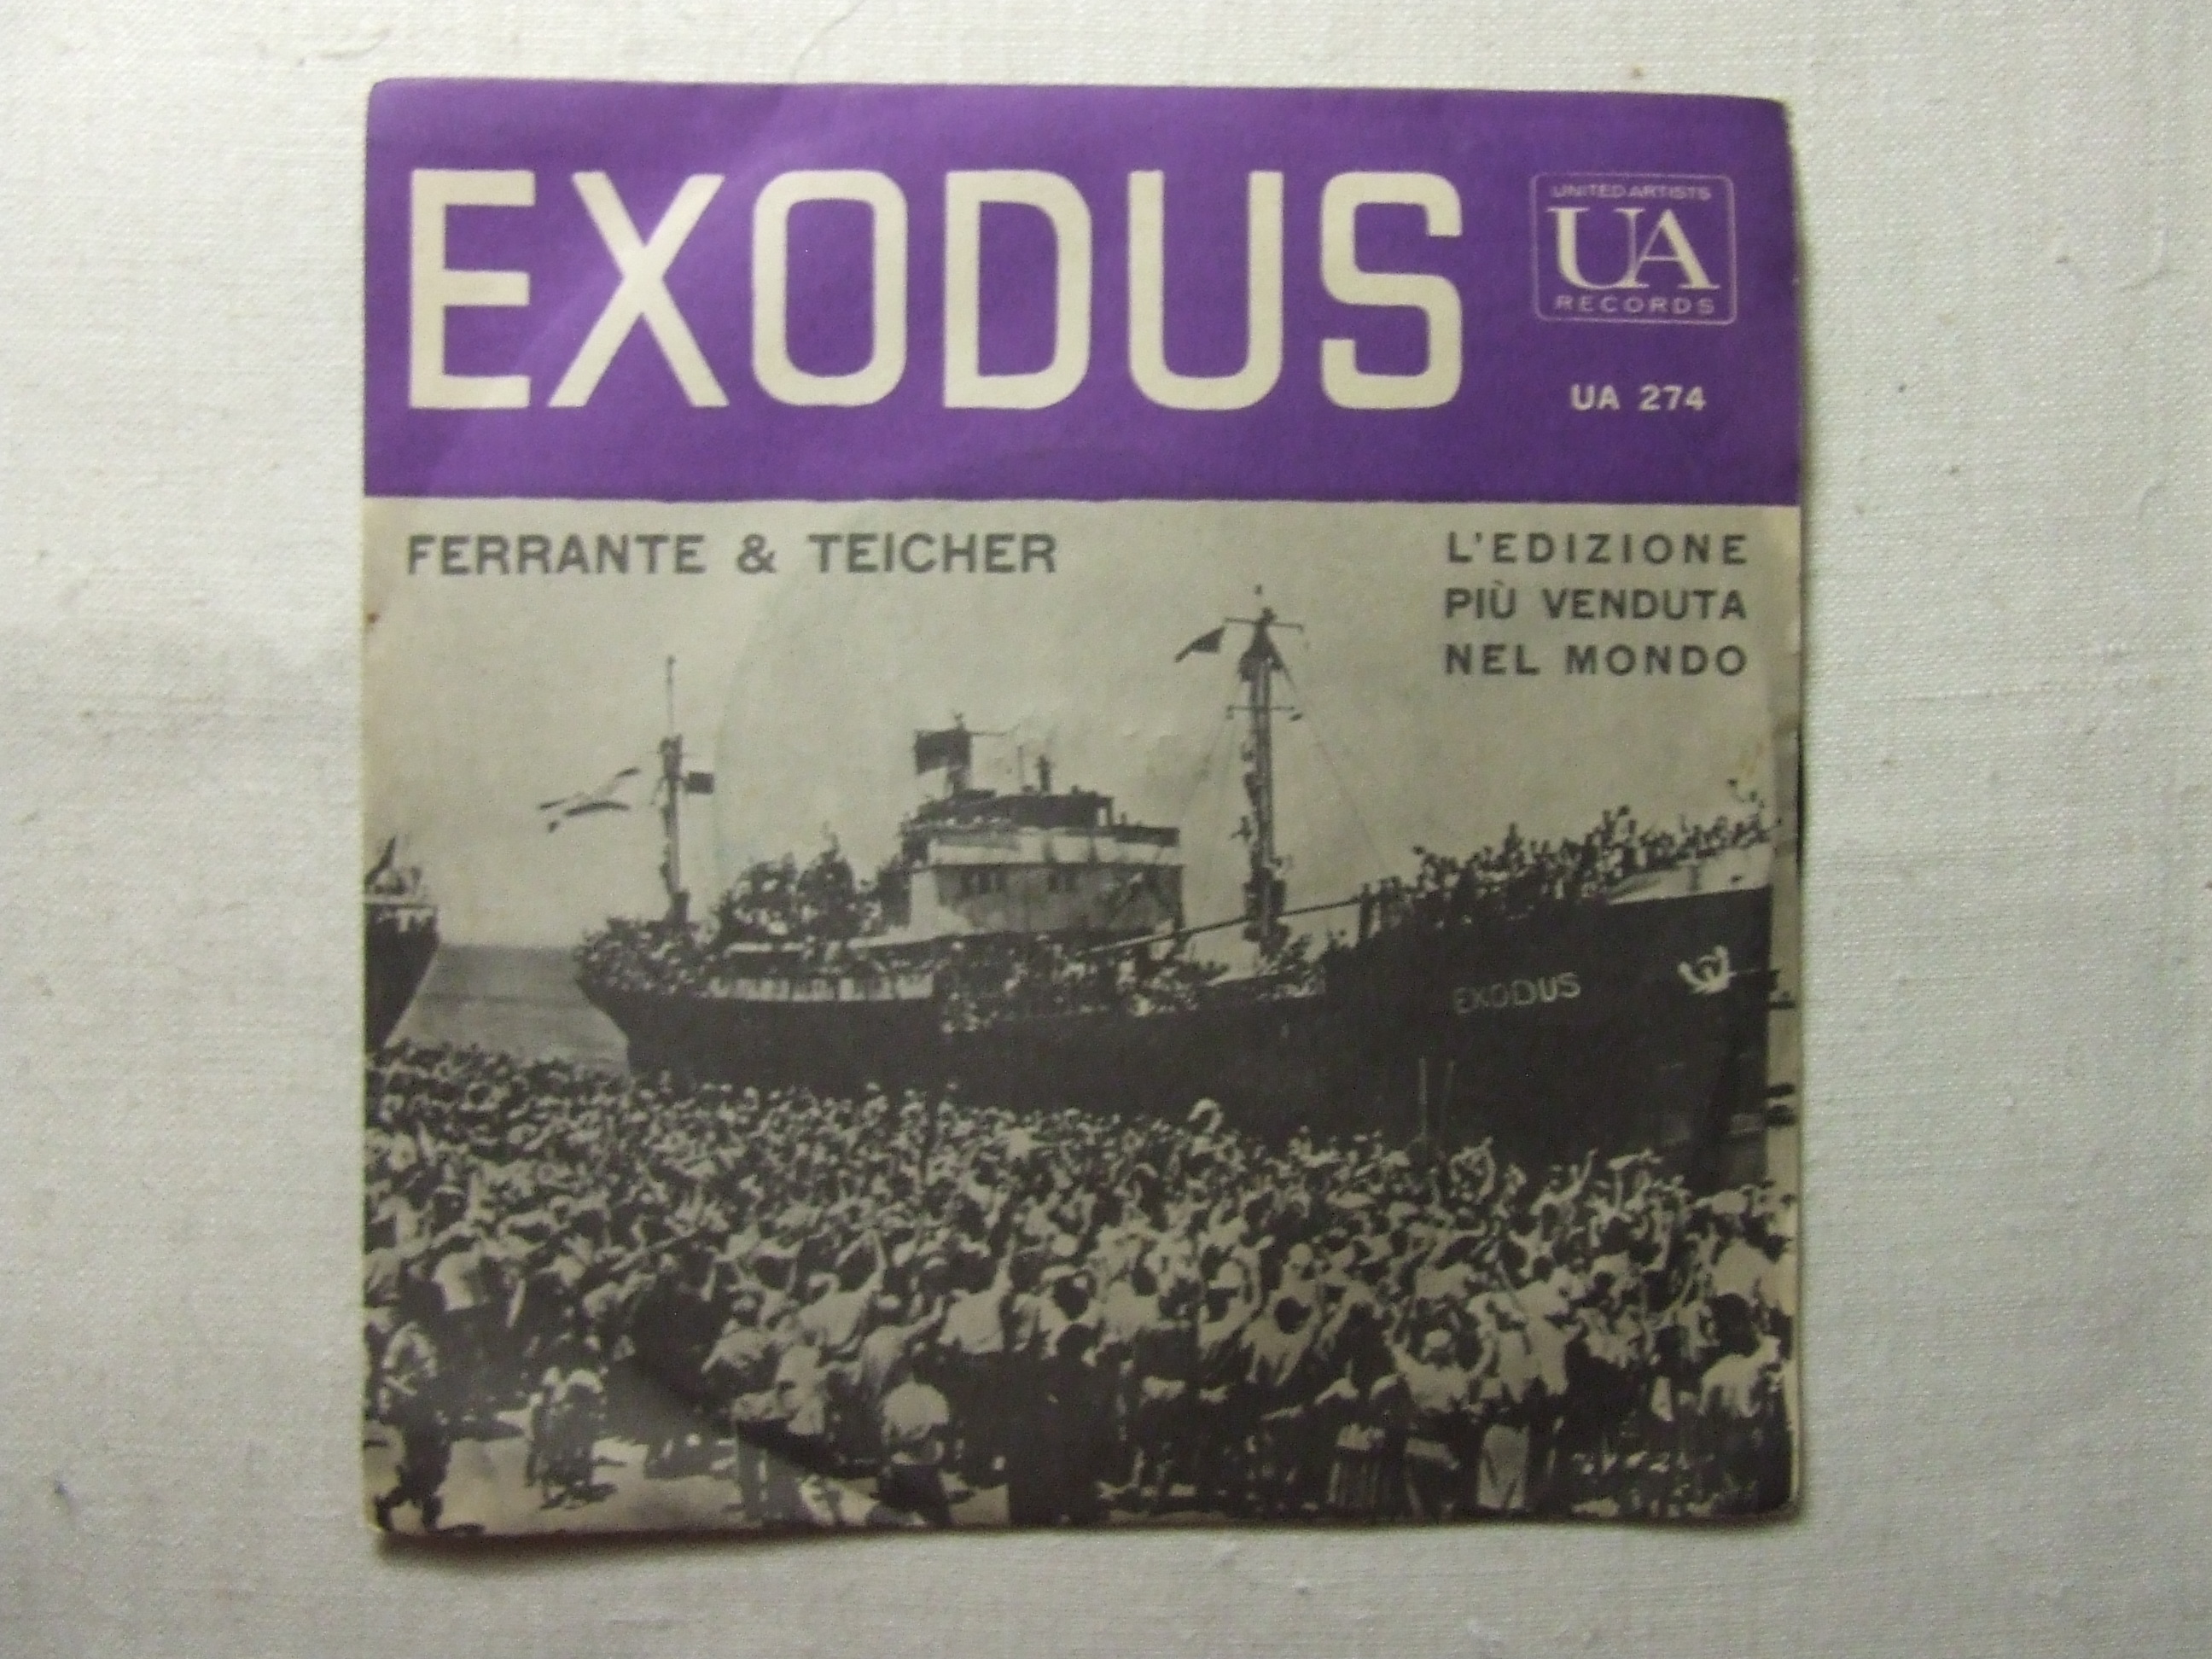 AL000242 45 giri - 7\' -  Ferrante And Teicher  Exodus